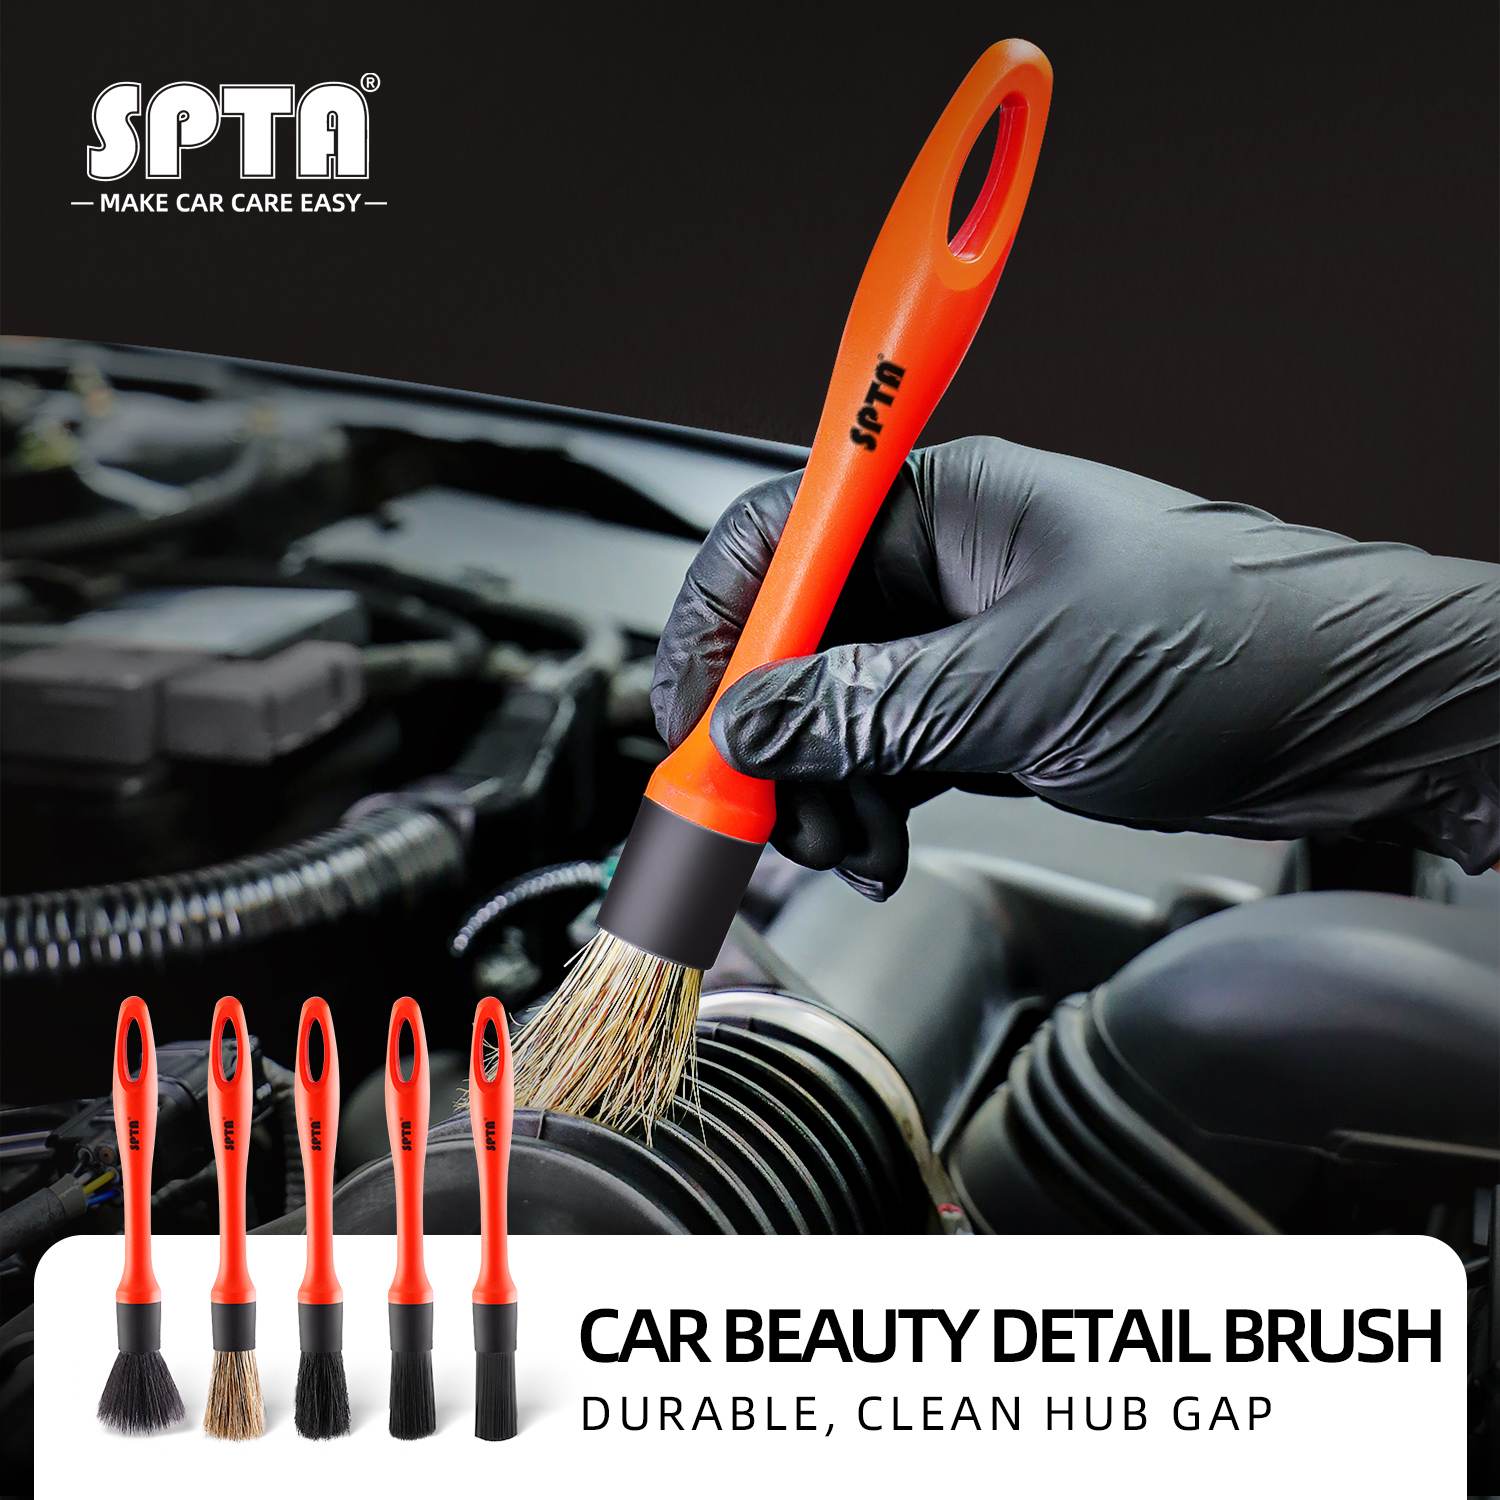  SPTA 3Pcs Car Detailing Brush Kit, Leather & Textile